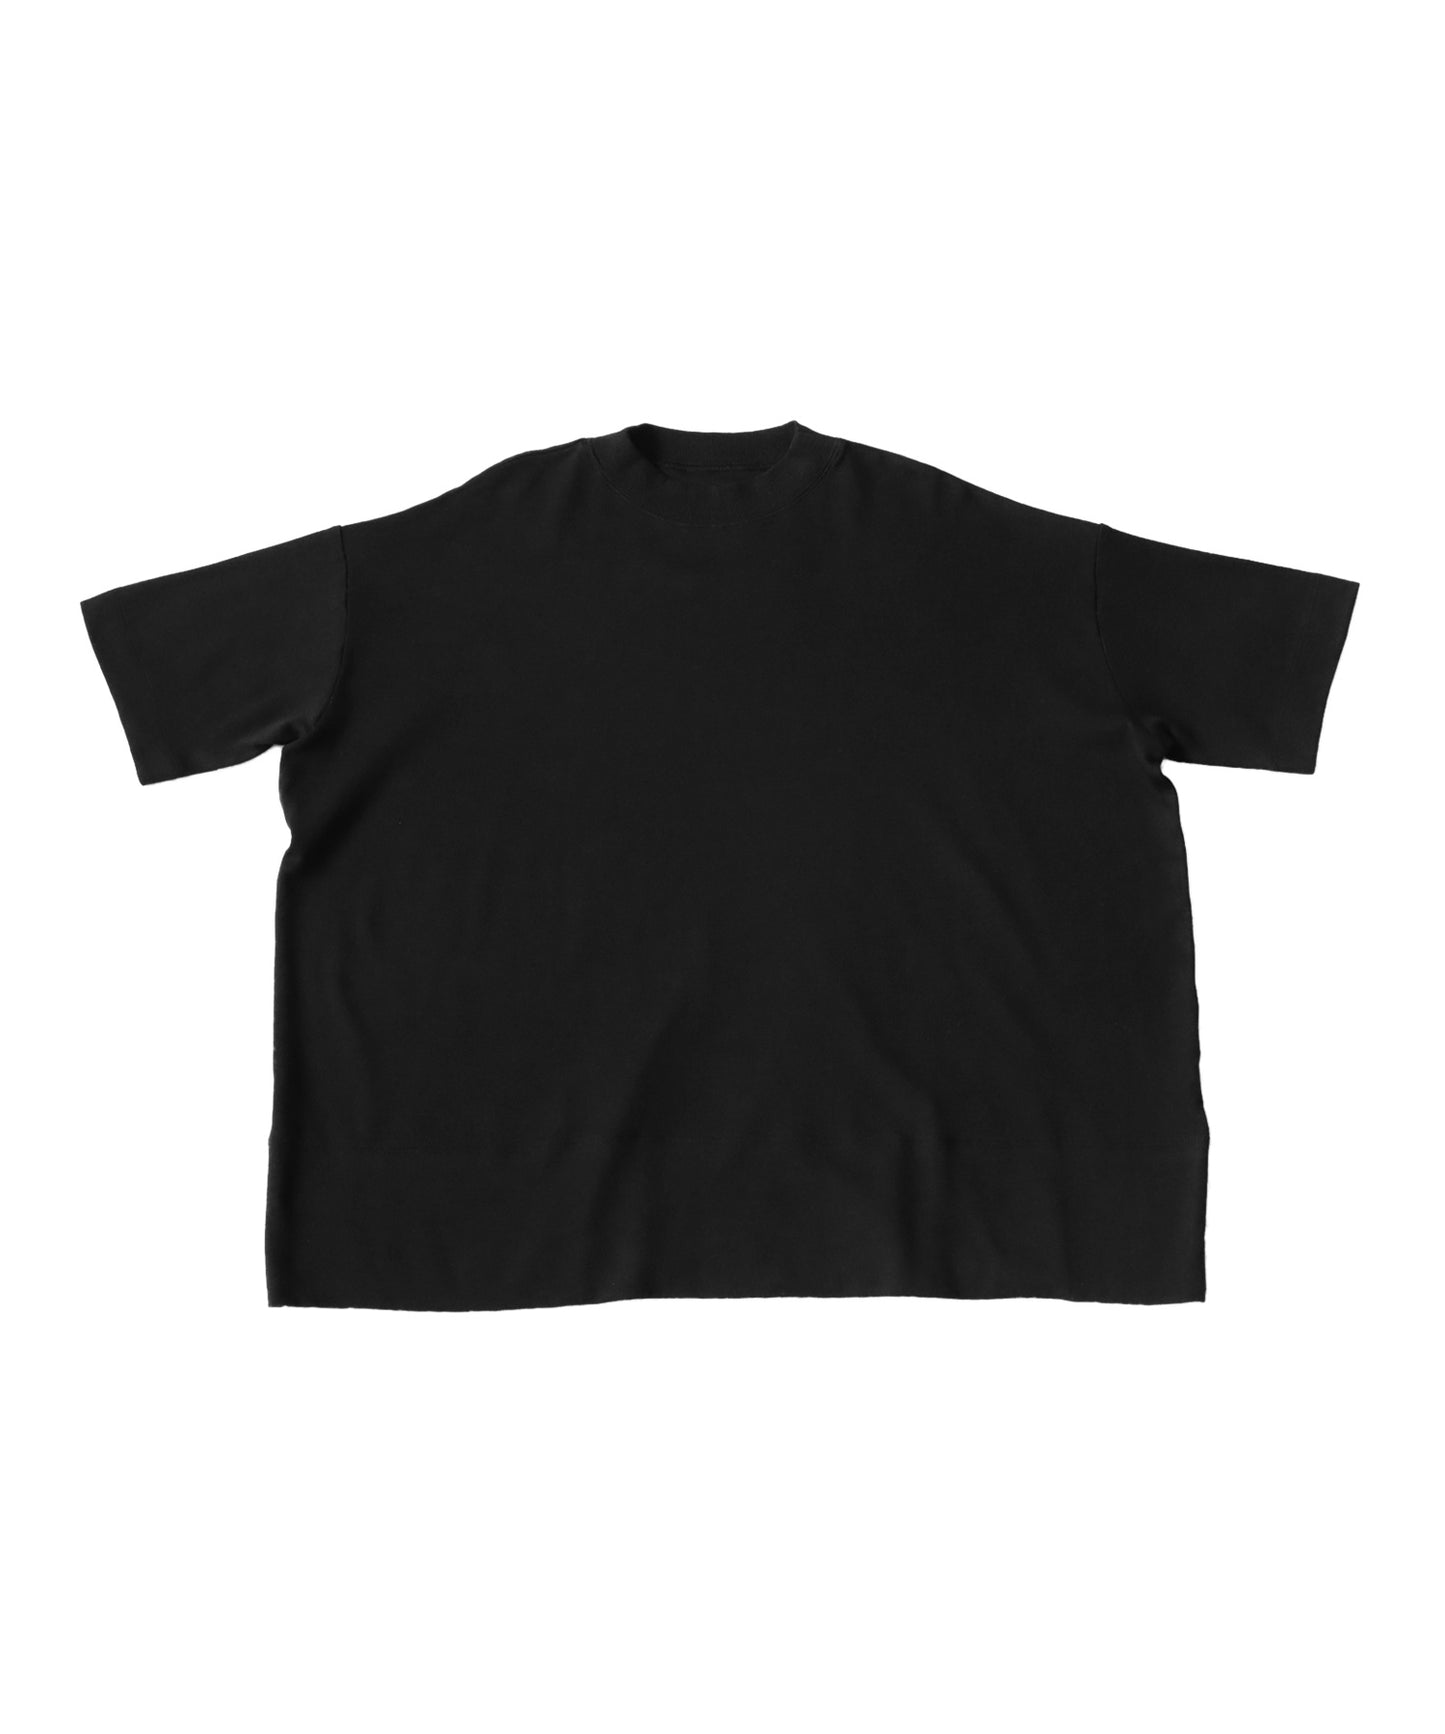 Smooth WoMen's T -shirt Short-Sleeve plain